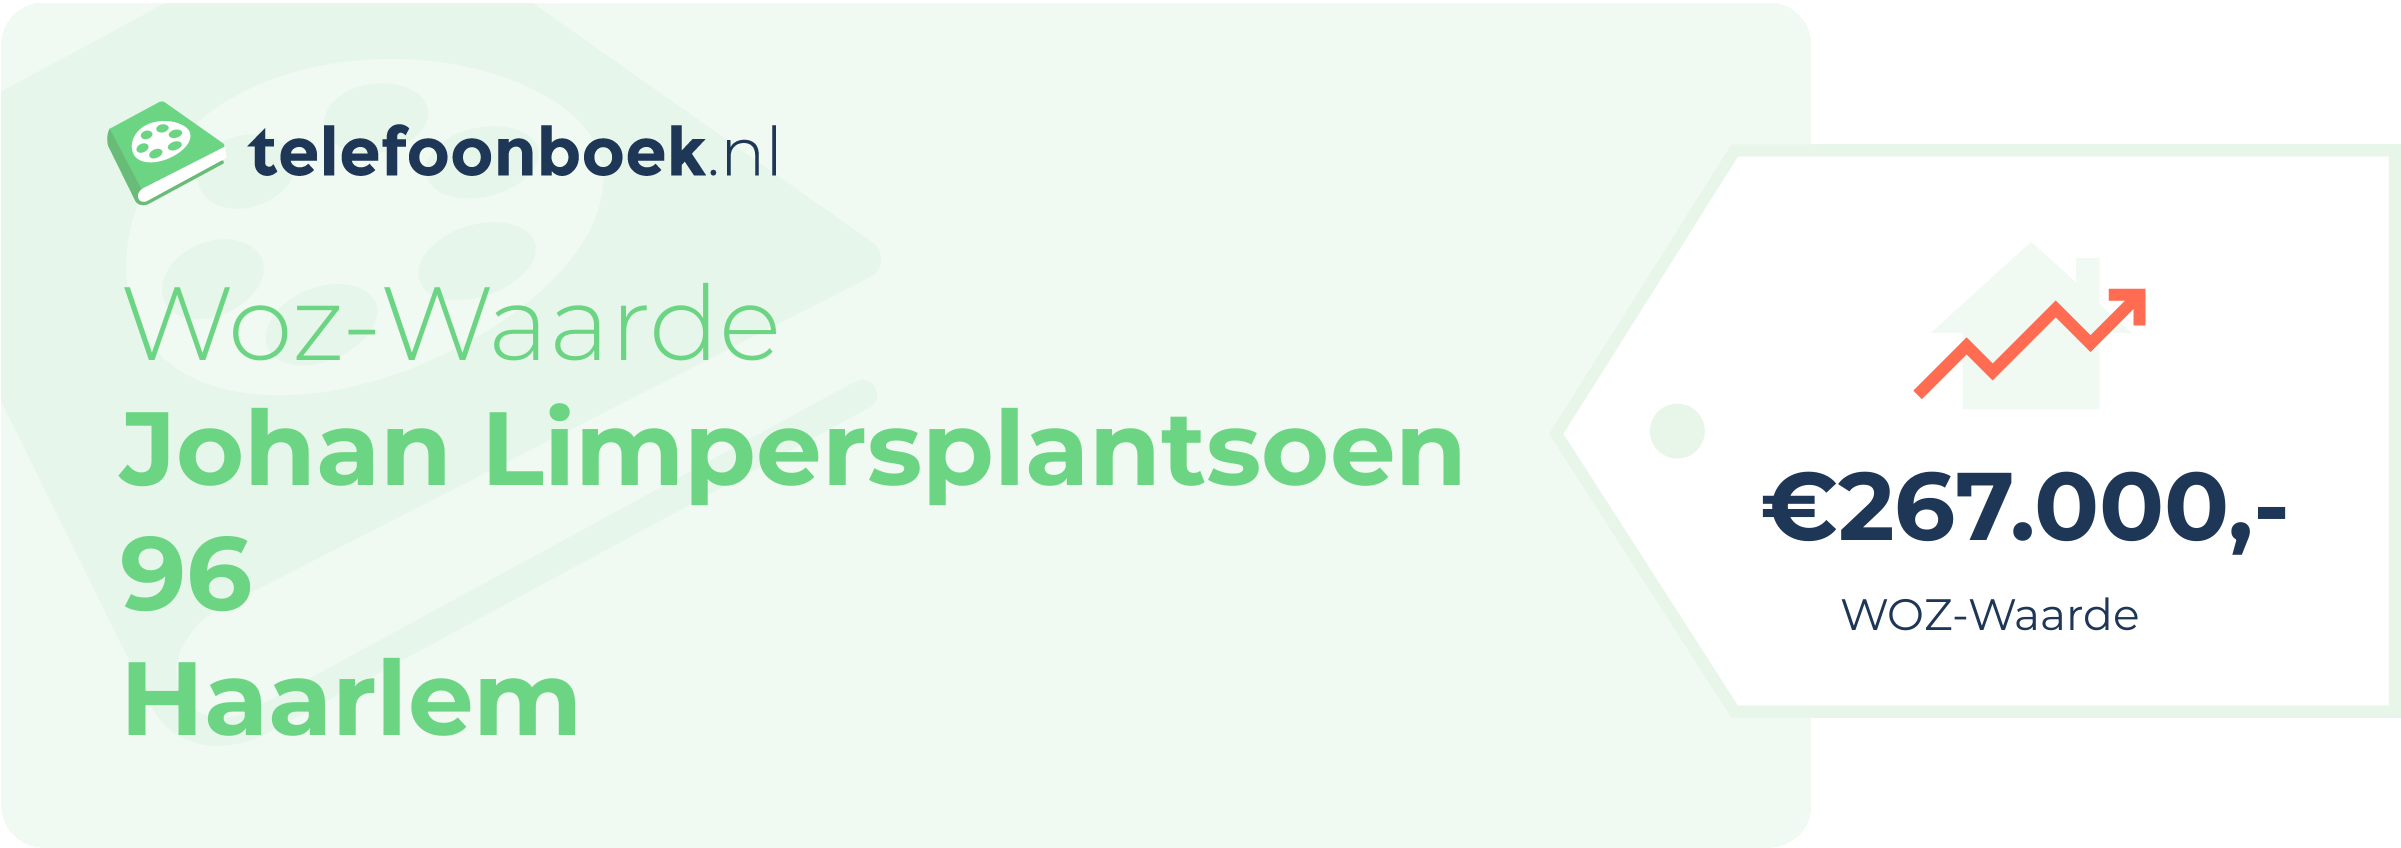 WOZ-waarde Johan Limpersplantsoen 96 Haarlem